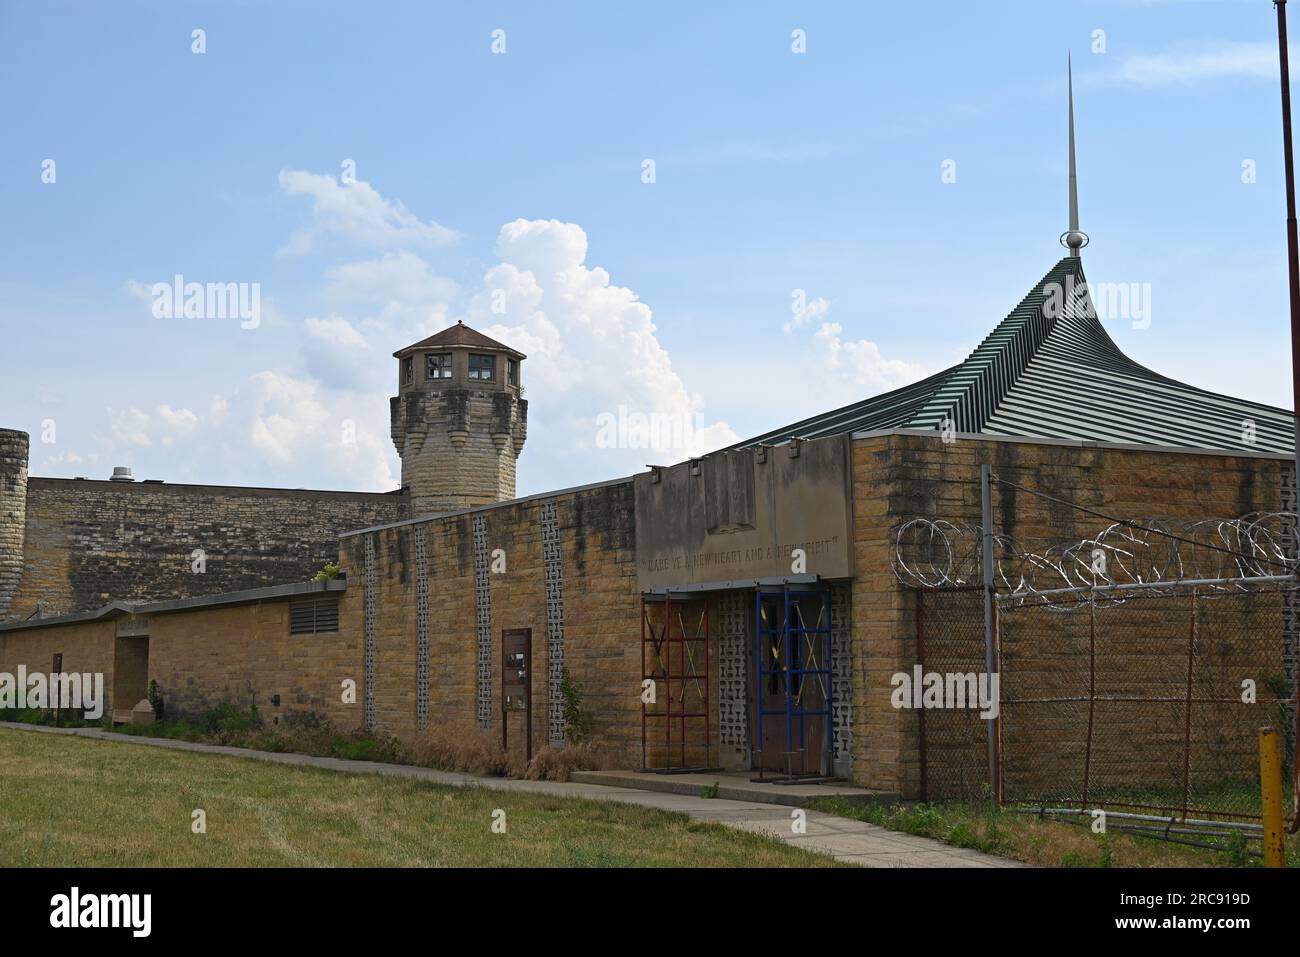 La flèche de l'église et la tour de garde de la prison du Vieux Joliet, qui ouvrit en 1858 et fut fermée et abandonnée en 2002. Banque D'Images